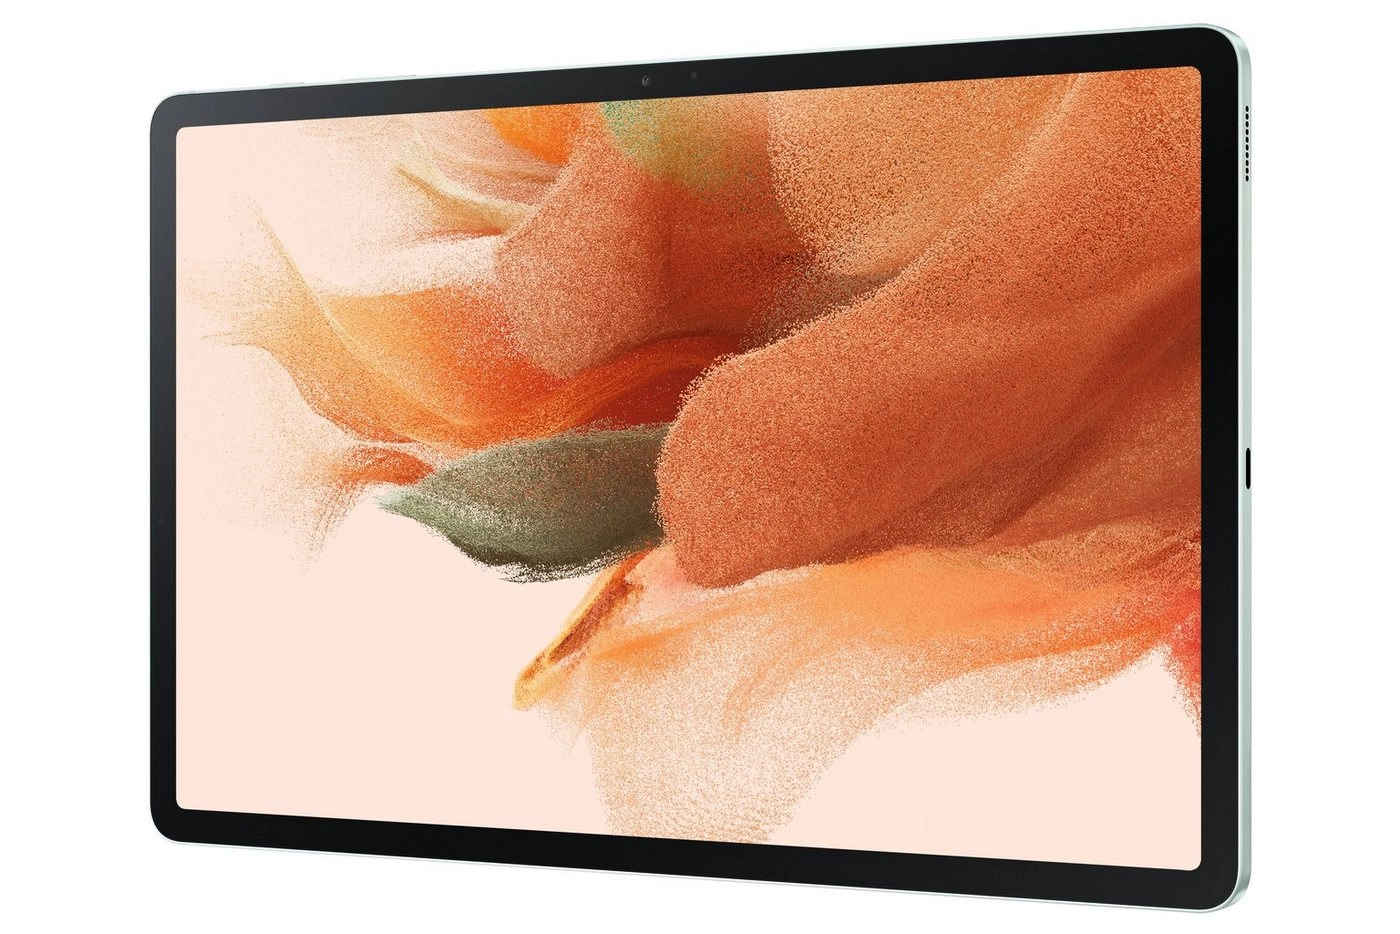 Samsung Galaxy Tab S7 FE|Tablet|Android|64 GB|31.5 cm (12.4) TFT (2560 x 1600)|Grün"